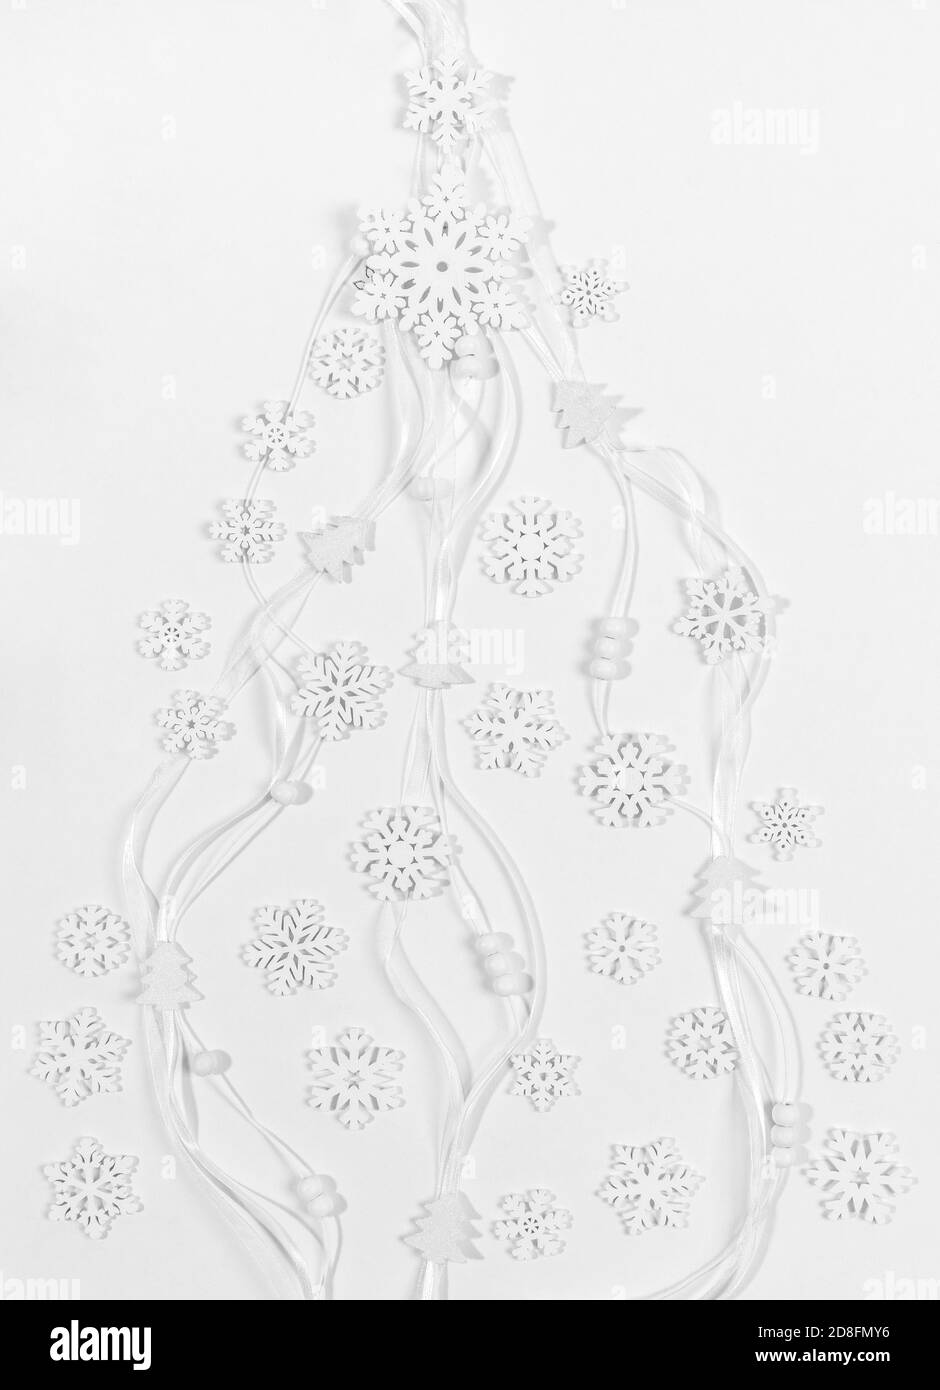 Weiße hölzerne Schneeflocken, kleine Weihnachtsbäume, runde Perlen auf schmalen Bändern liegen flach als kreativer Weihnachtsbaum. Stockfoto